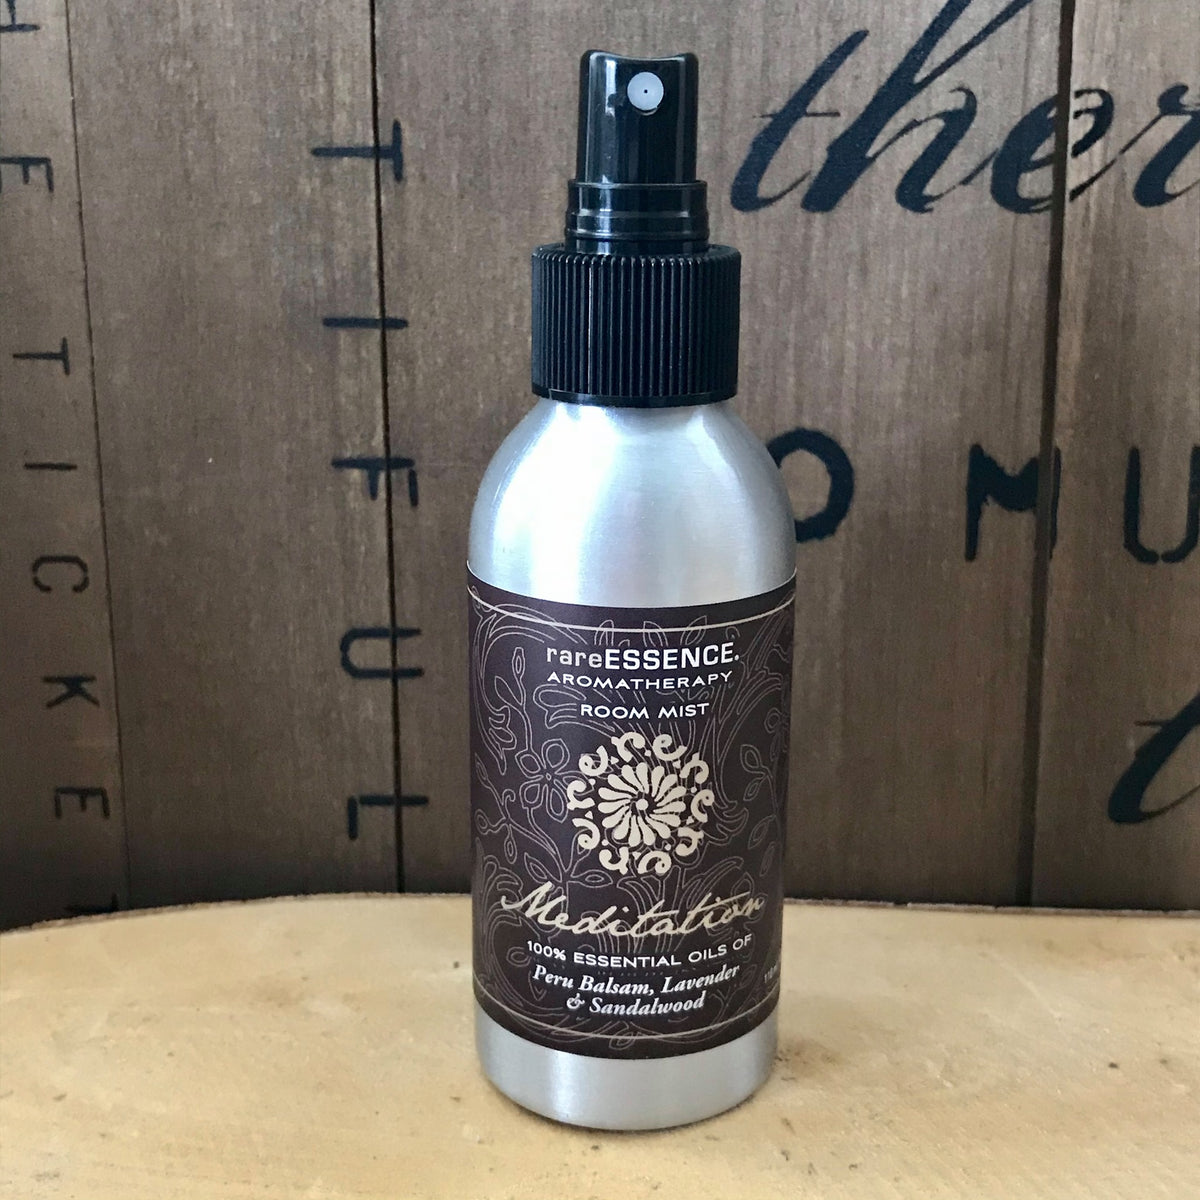 Spray bottle of Meditation room mist labeled made of balsam, lavender, and sandalwood essential oils.